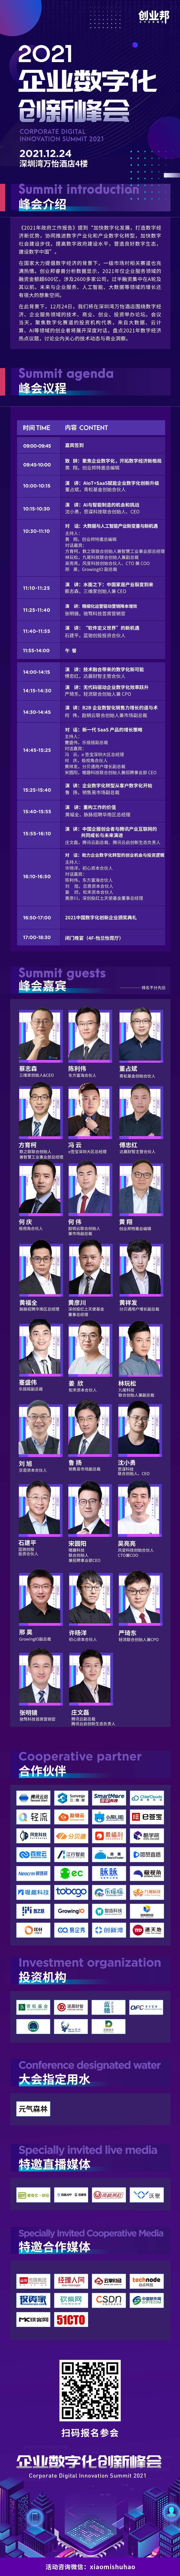 2021企业数字化创新峰会定档，12月24日深圳见！